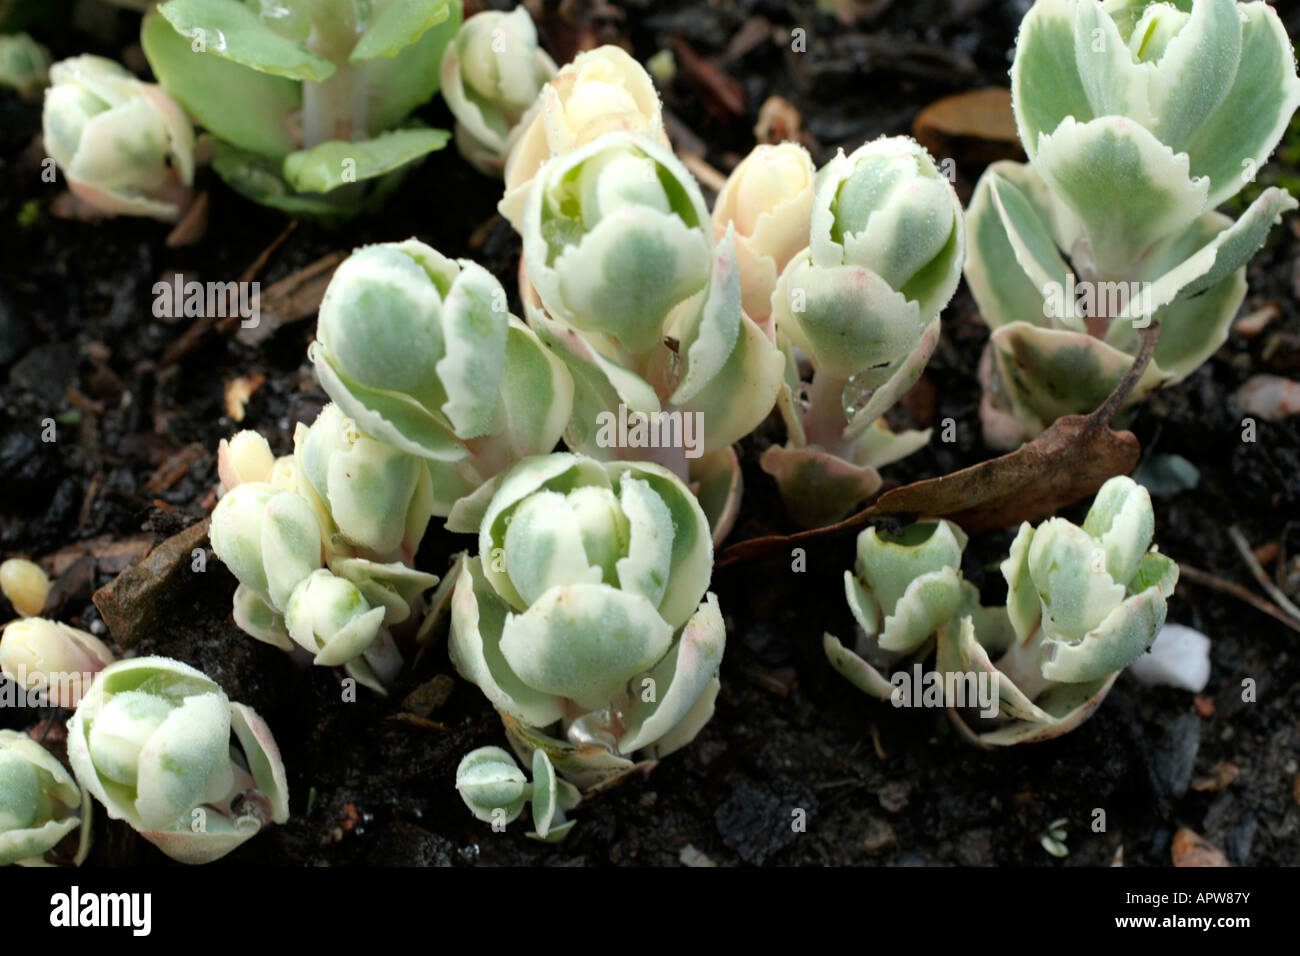 Sedum spectabile variegatum expanding buds also known as Sedum erythrostictum Mediovariegatum Stock Photo